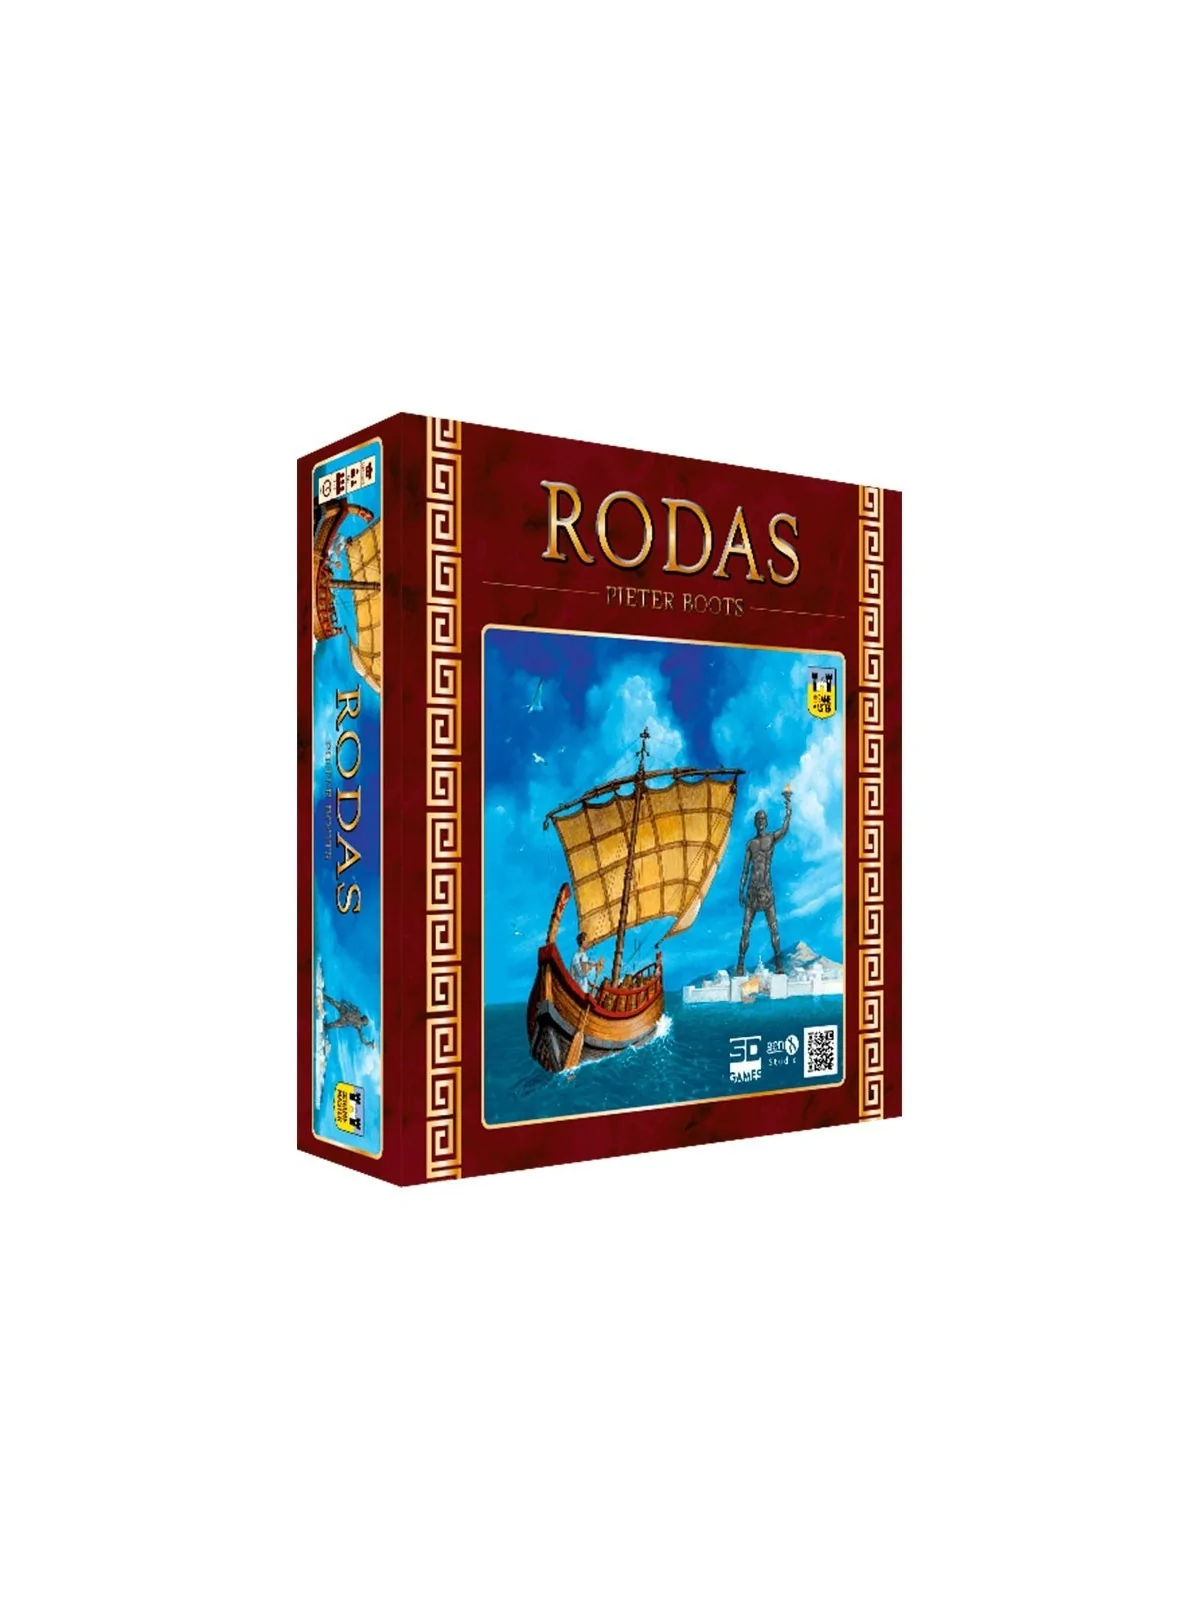 Comprar Rodas barato al mejor precio 35,96 € de SD GAMES